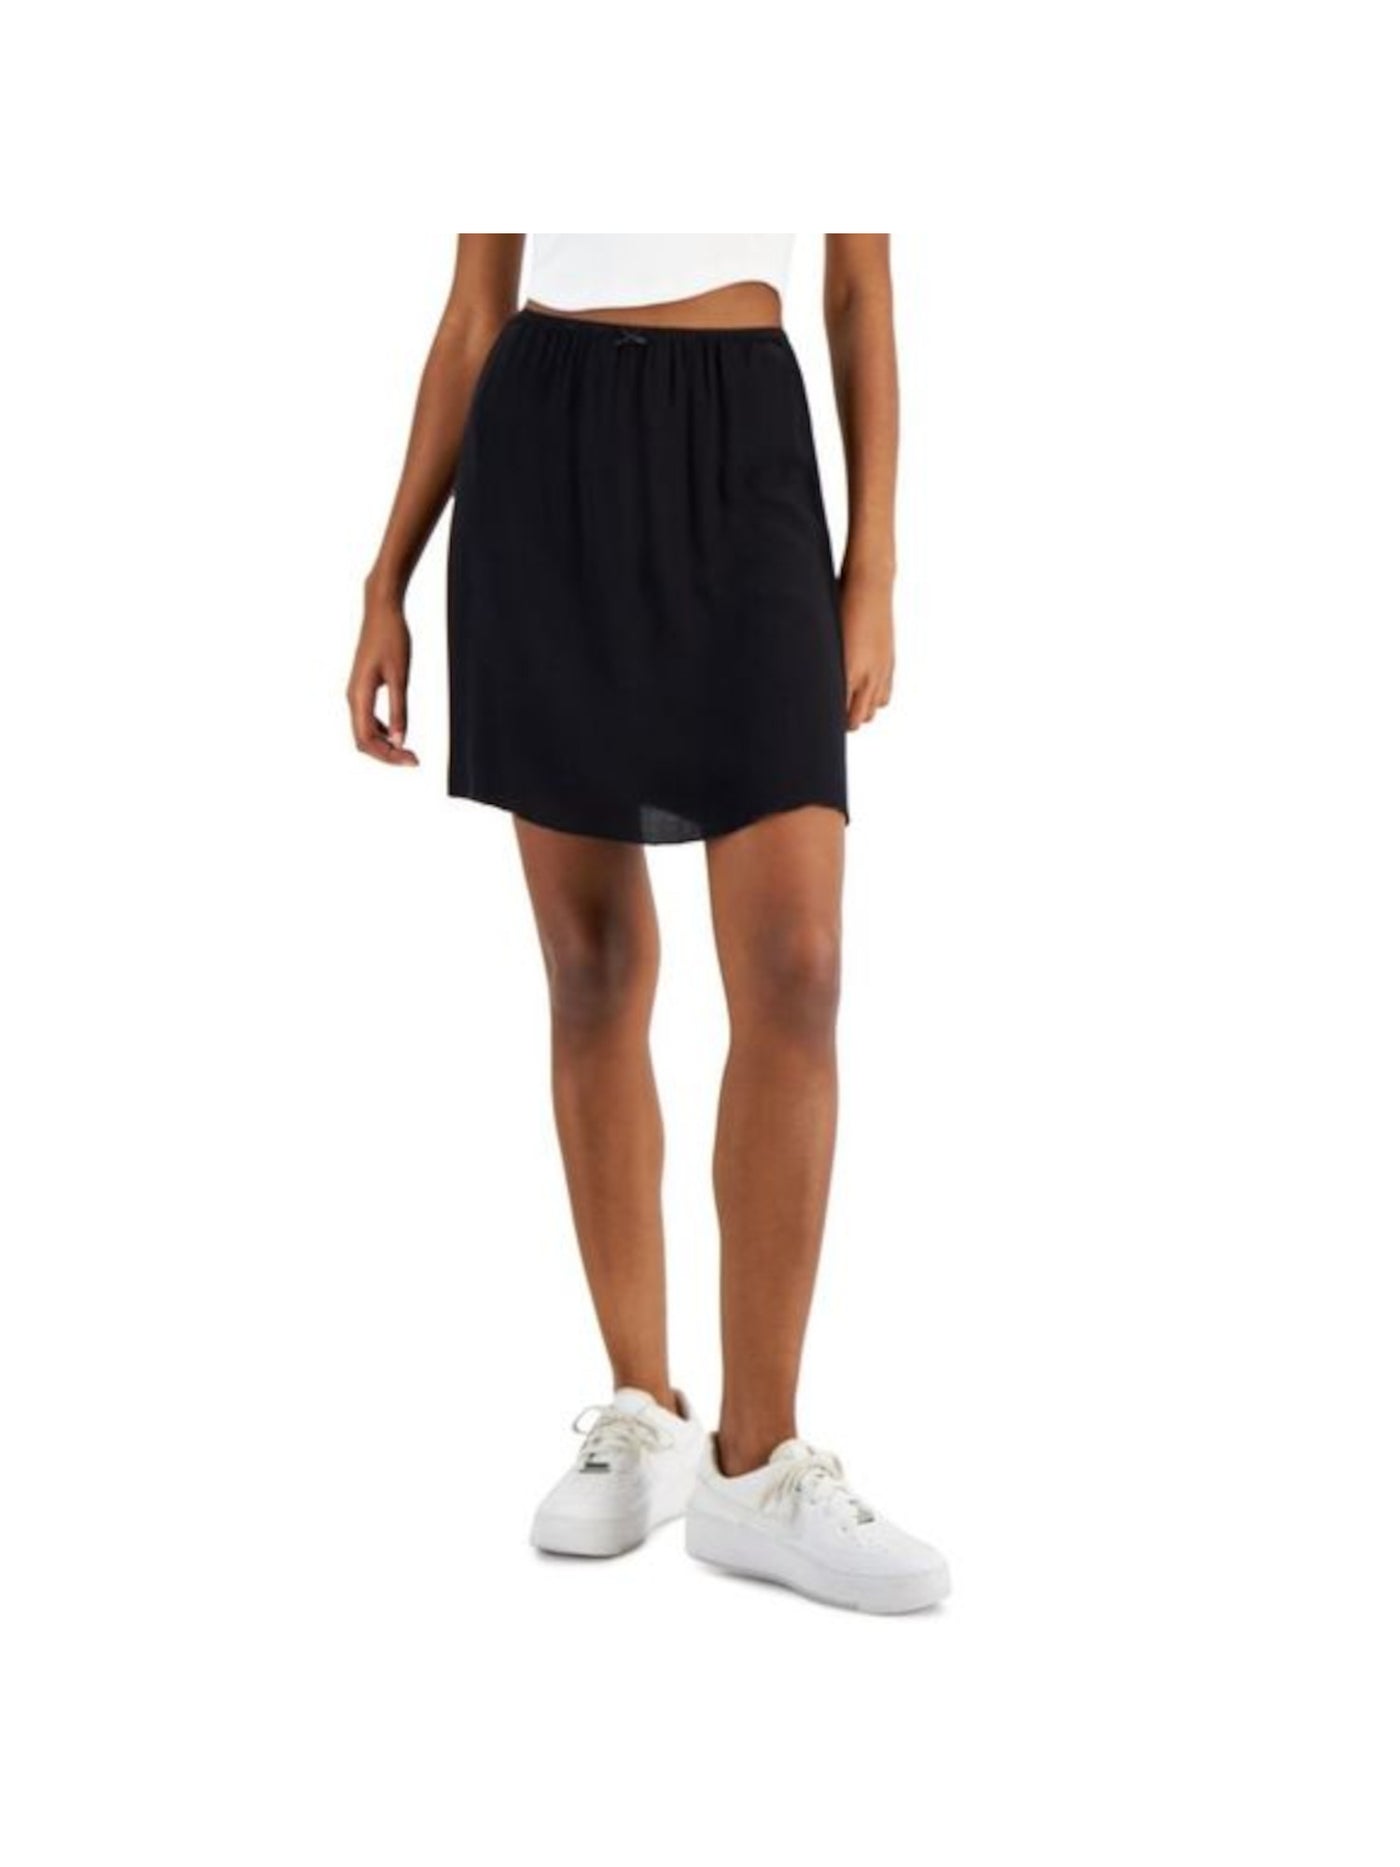 LOVE FIRE Womens Black Sheer Unlined Bow Detail Laced Waist Short A-Line Skirt Juniors L